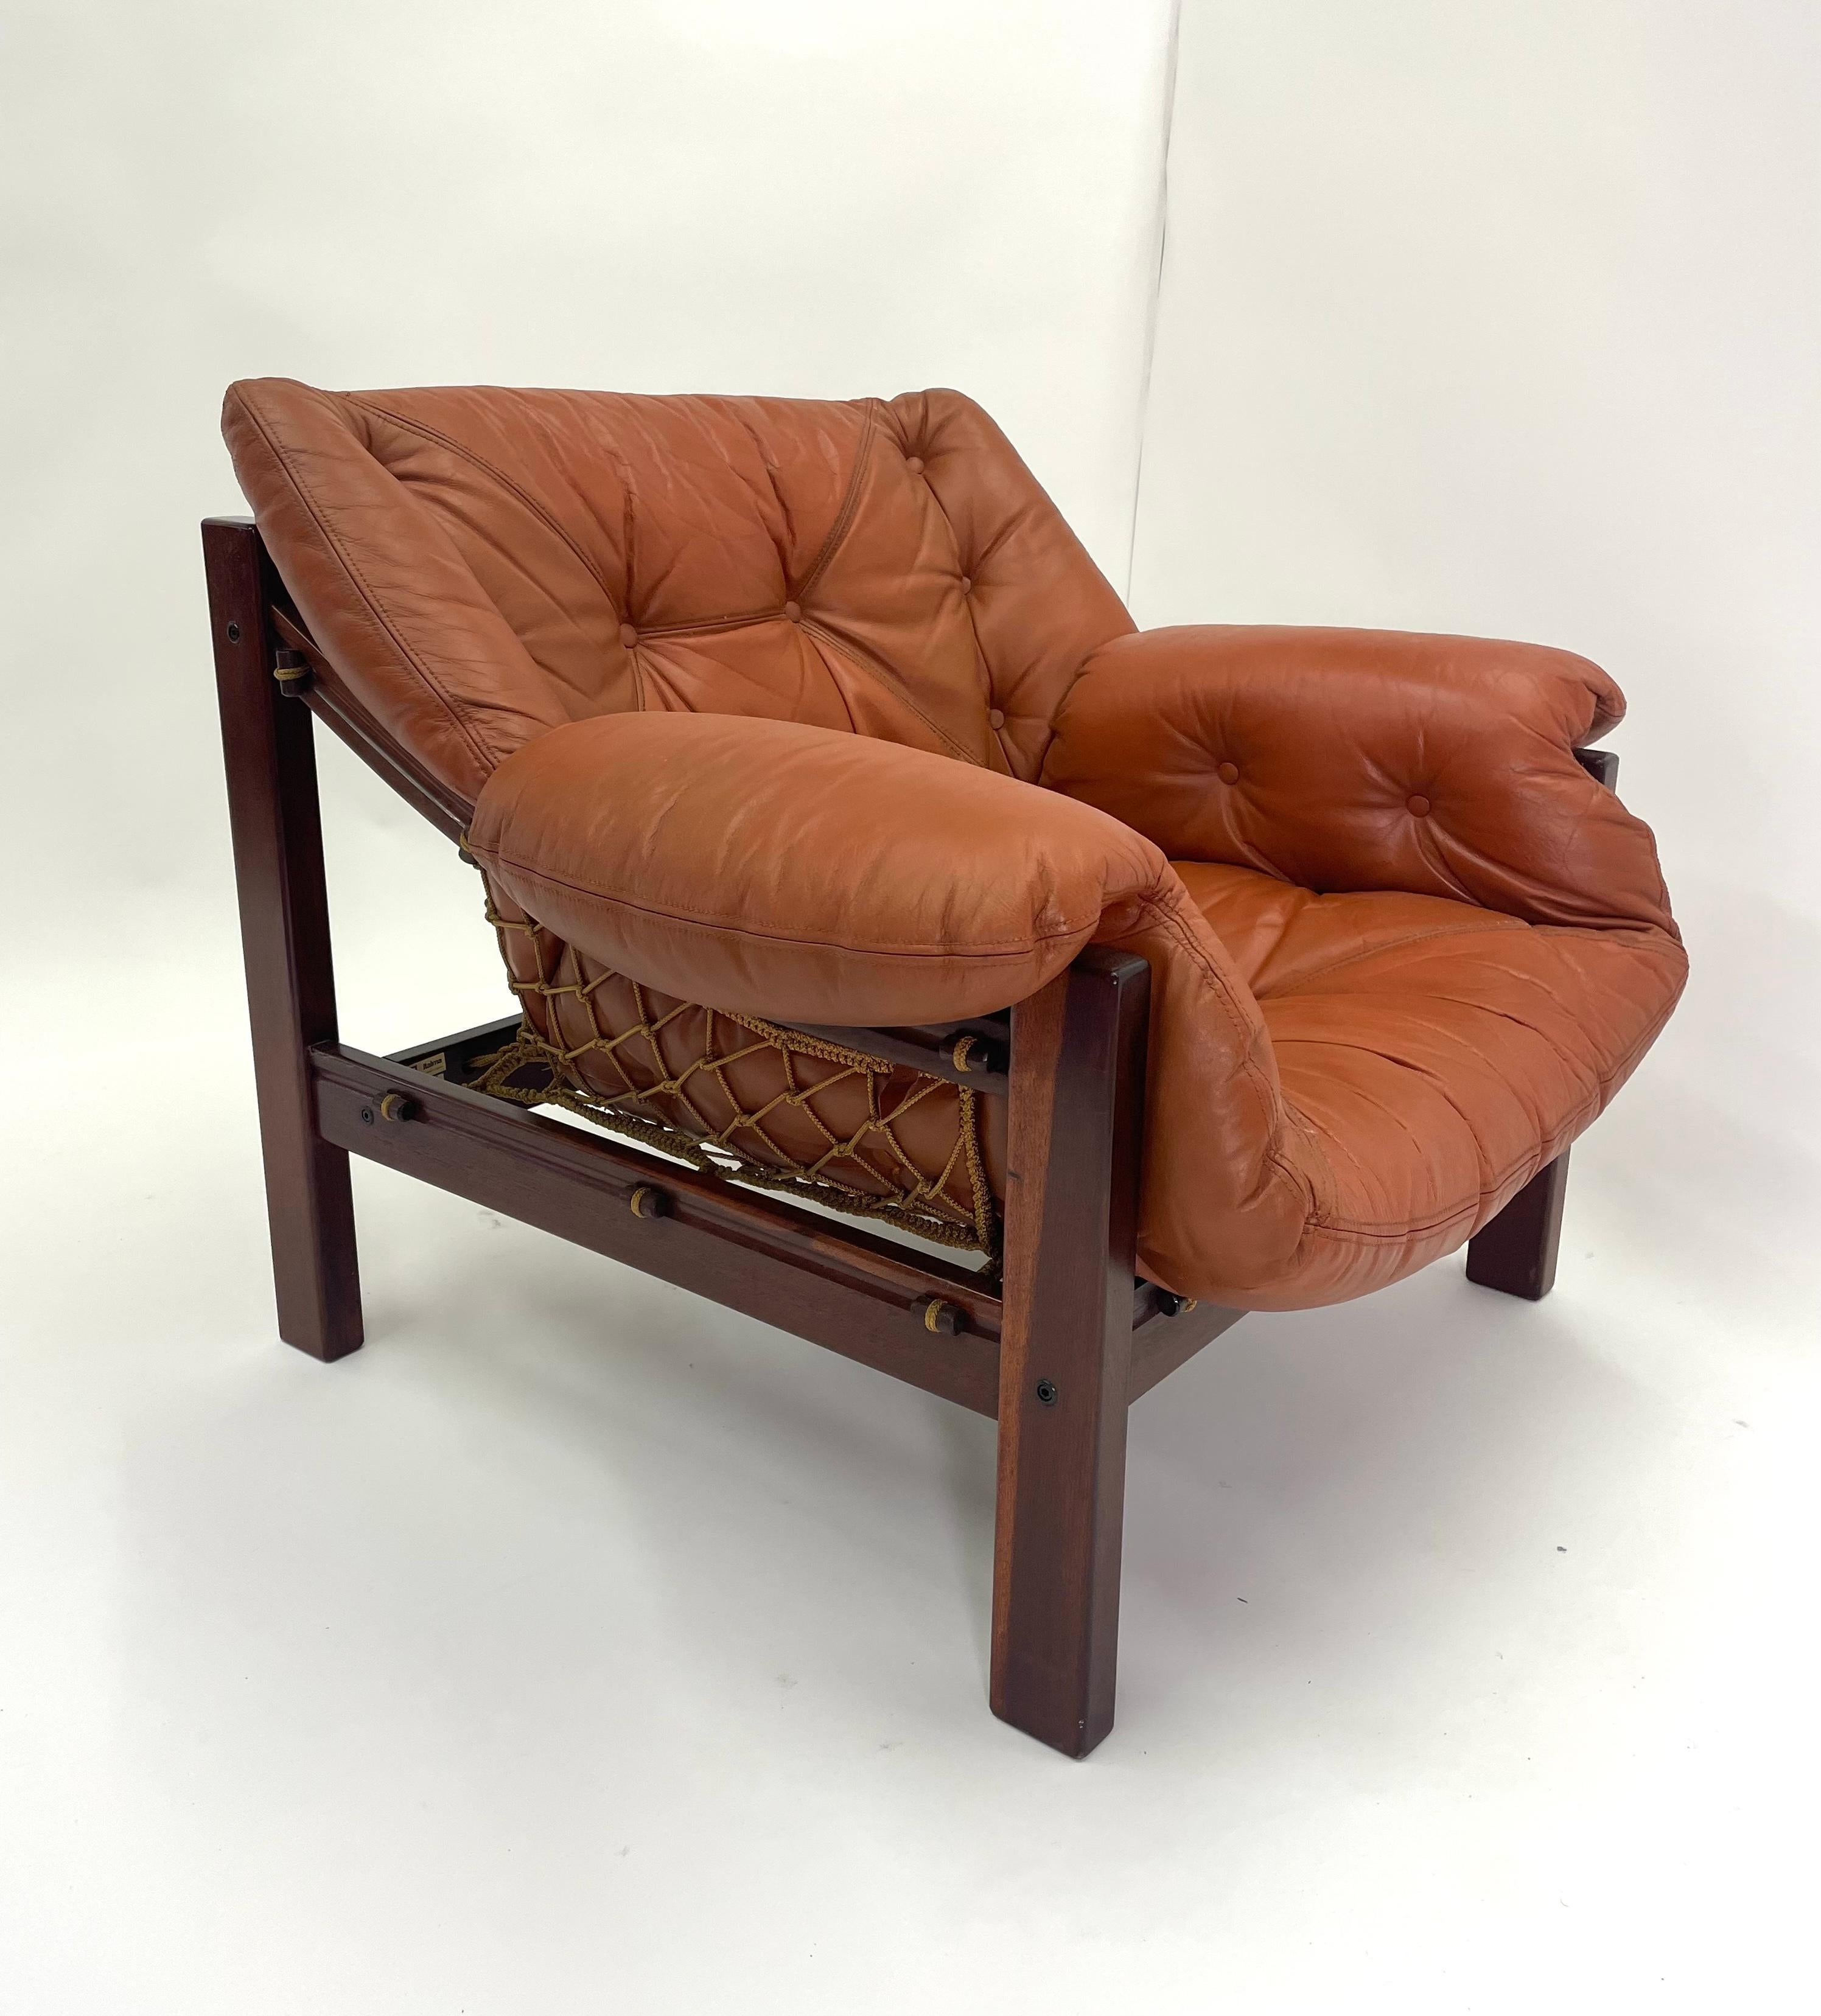 La chaise brésilienne Jangada avec ottoman, conçue par Jean Gillon, incarne l'essence du confort et de la sophistication avec une touche distincte d'artisanat brésilien. Inspiré par les bateaux de pêche traditionnels du nord-est du Brésil, connus